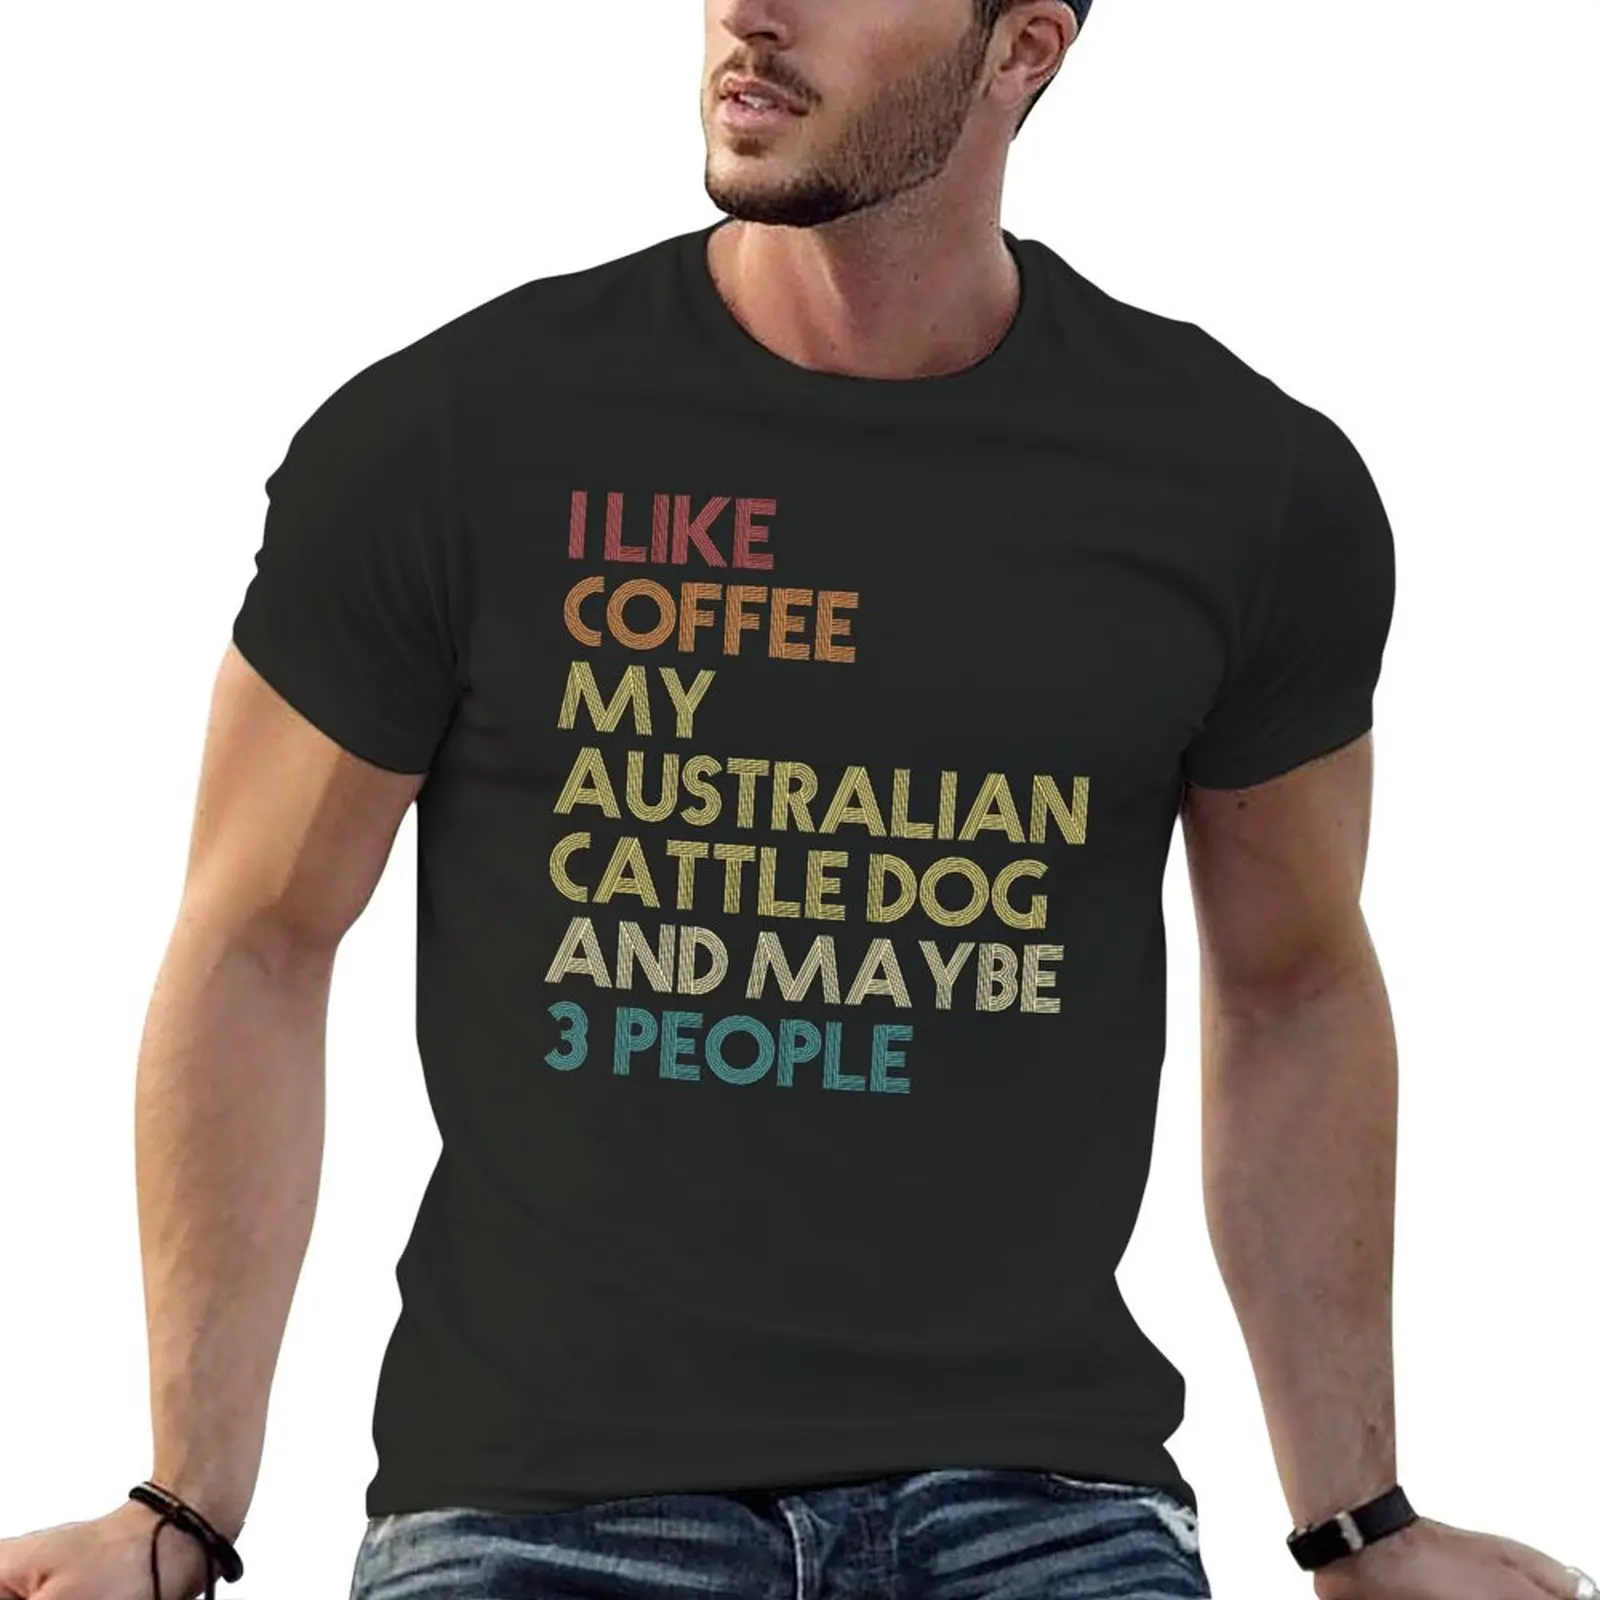 

Австралийская футболка с рисунком крупного рогатого скота, собаки, кофейного влюбленного, забавная винтажная Ретро футболка, эстетическая одежда, топы, футболки для мужчин, графика